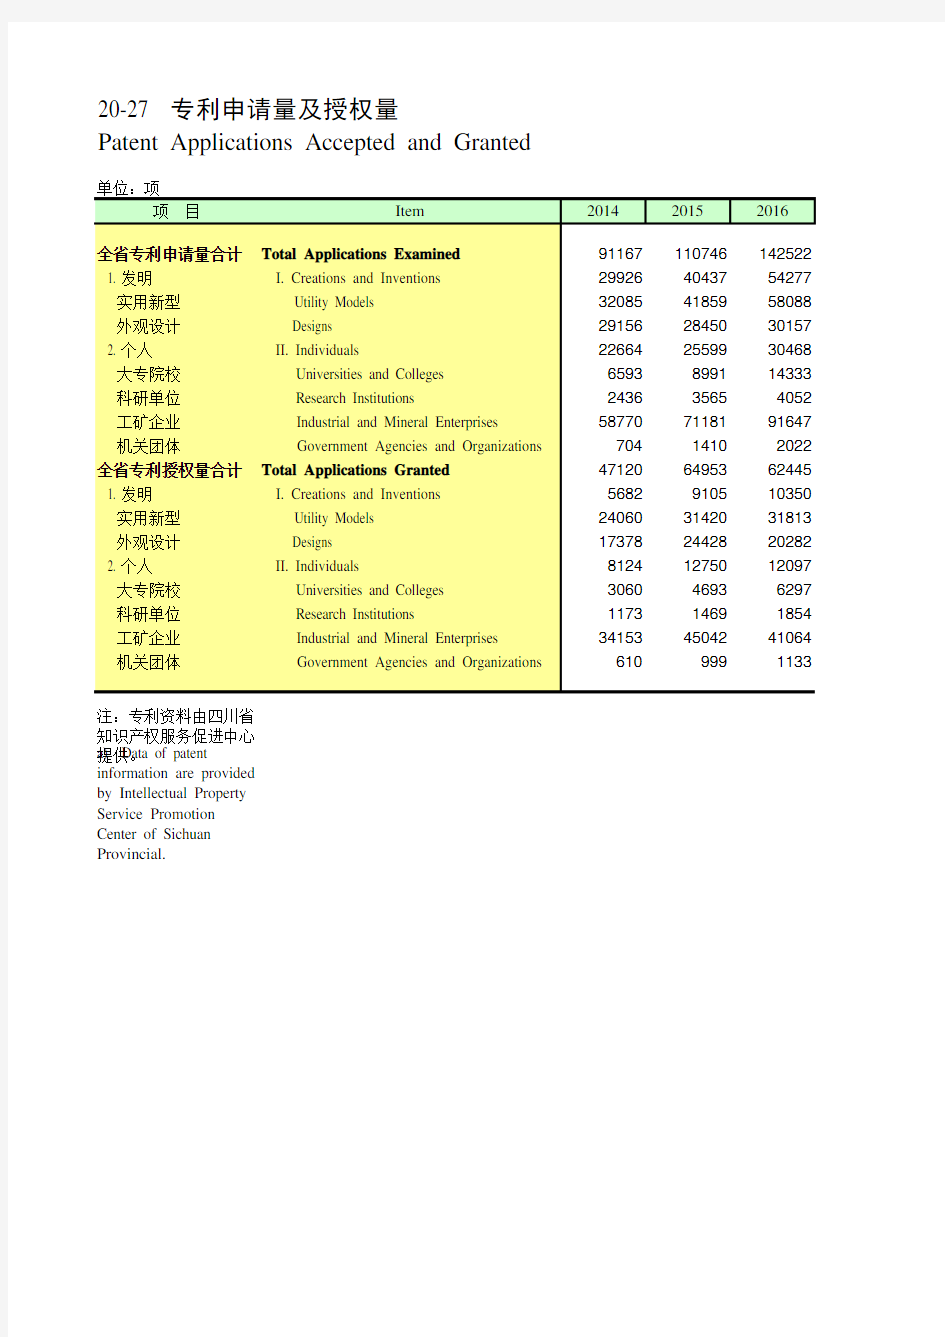 四川统计年鉴2020社会经济指标：专利申请量及授权量